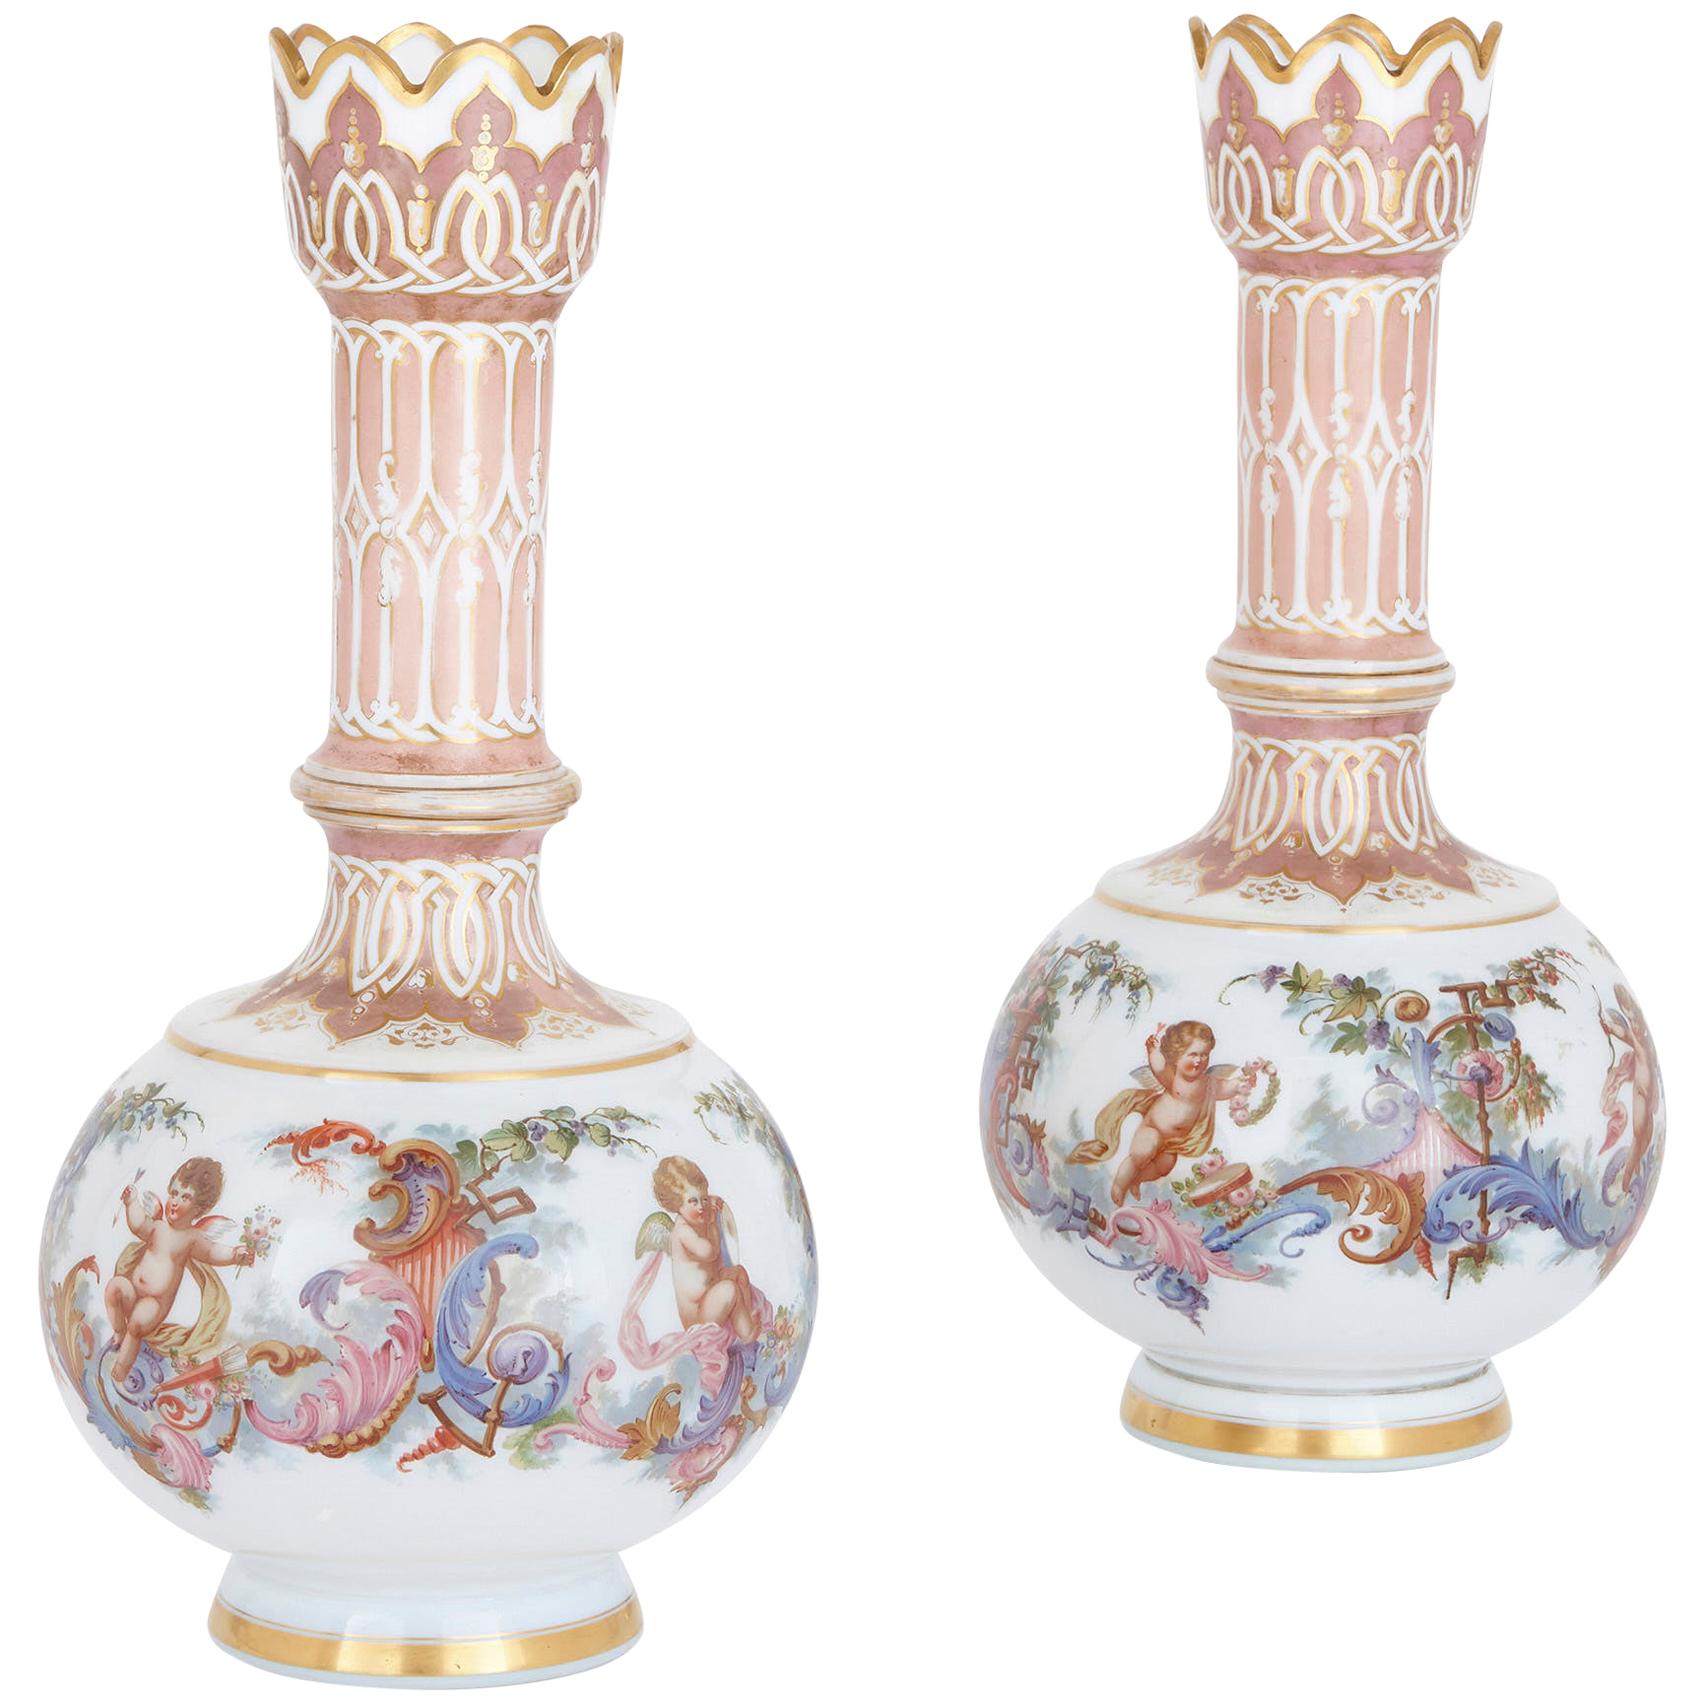 Vasen aus böhmischem Opalglas mit gemalten Cherub-Szenen